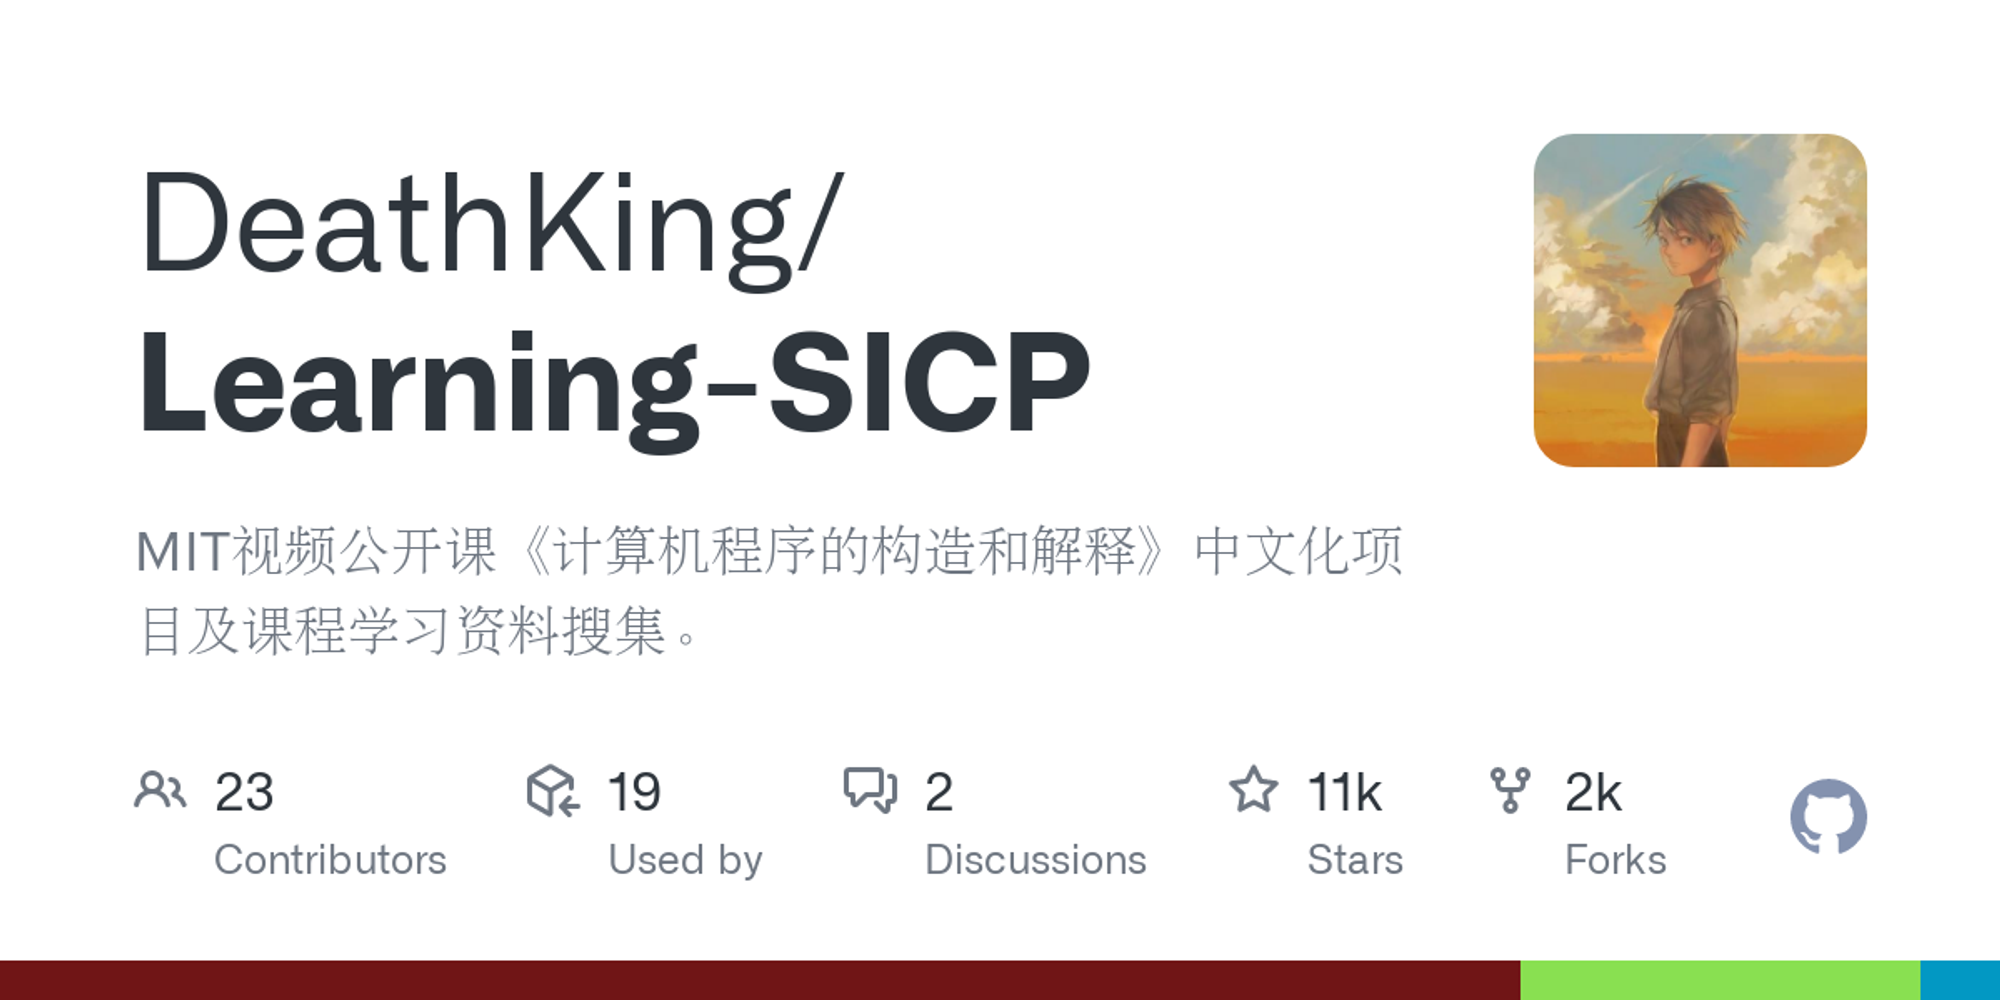 GitHub - DeathKing/Learning-SICP: MIT视频公开课《计算机程序的构造和解释》中文化项目及课程学习资料搜集。